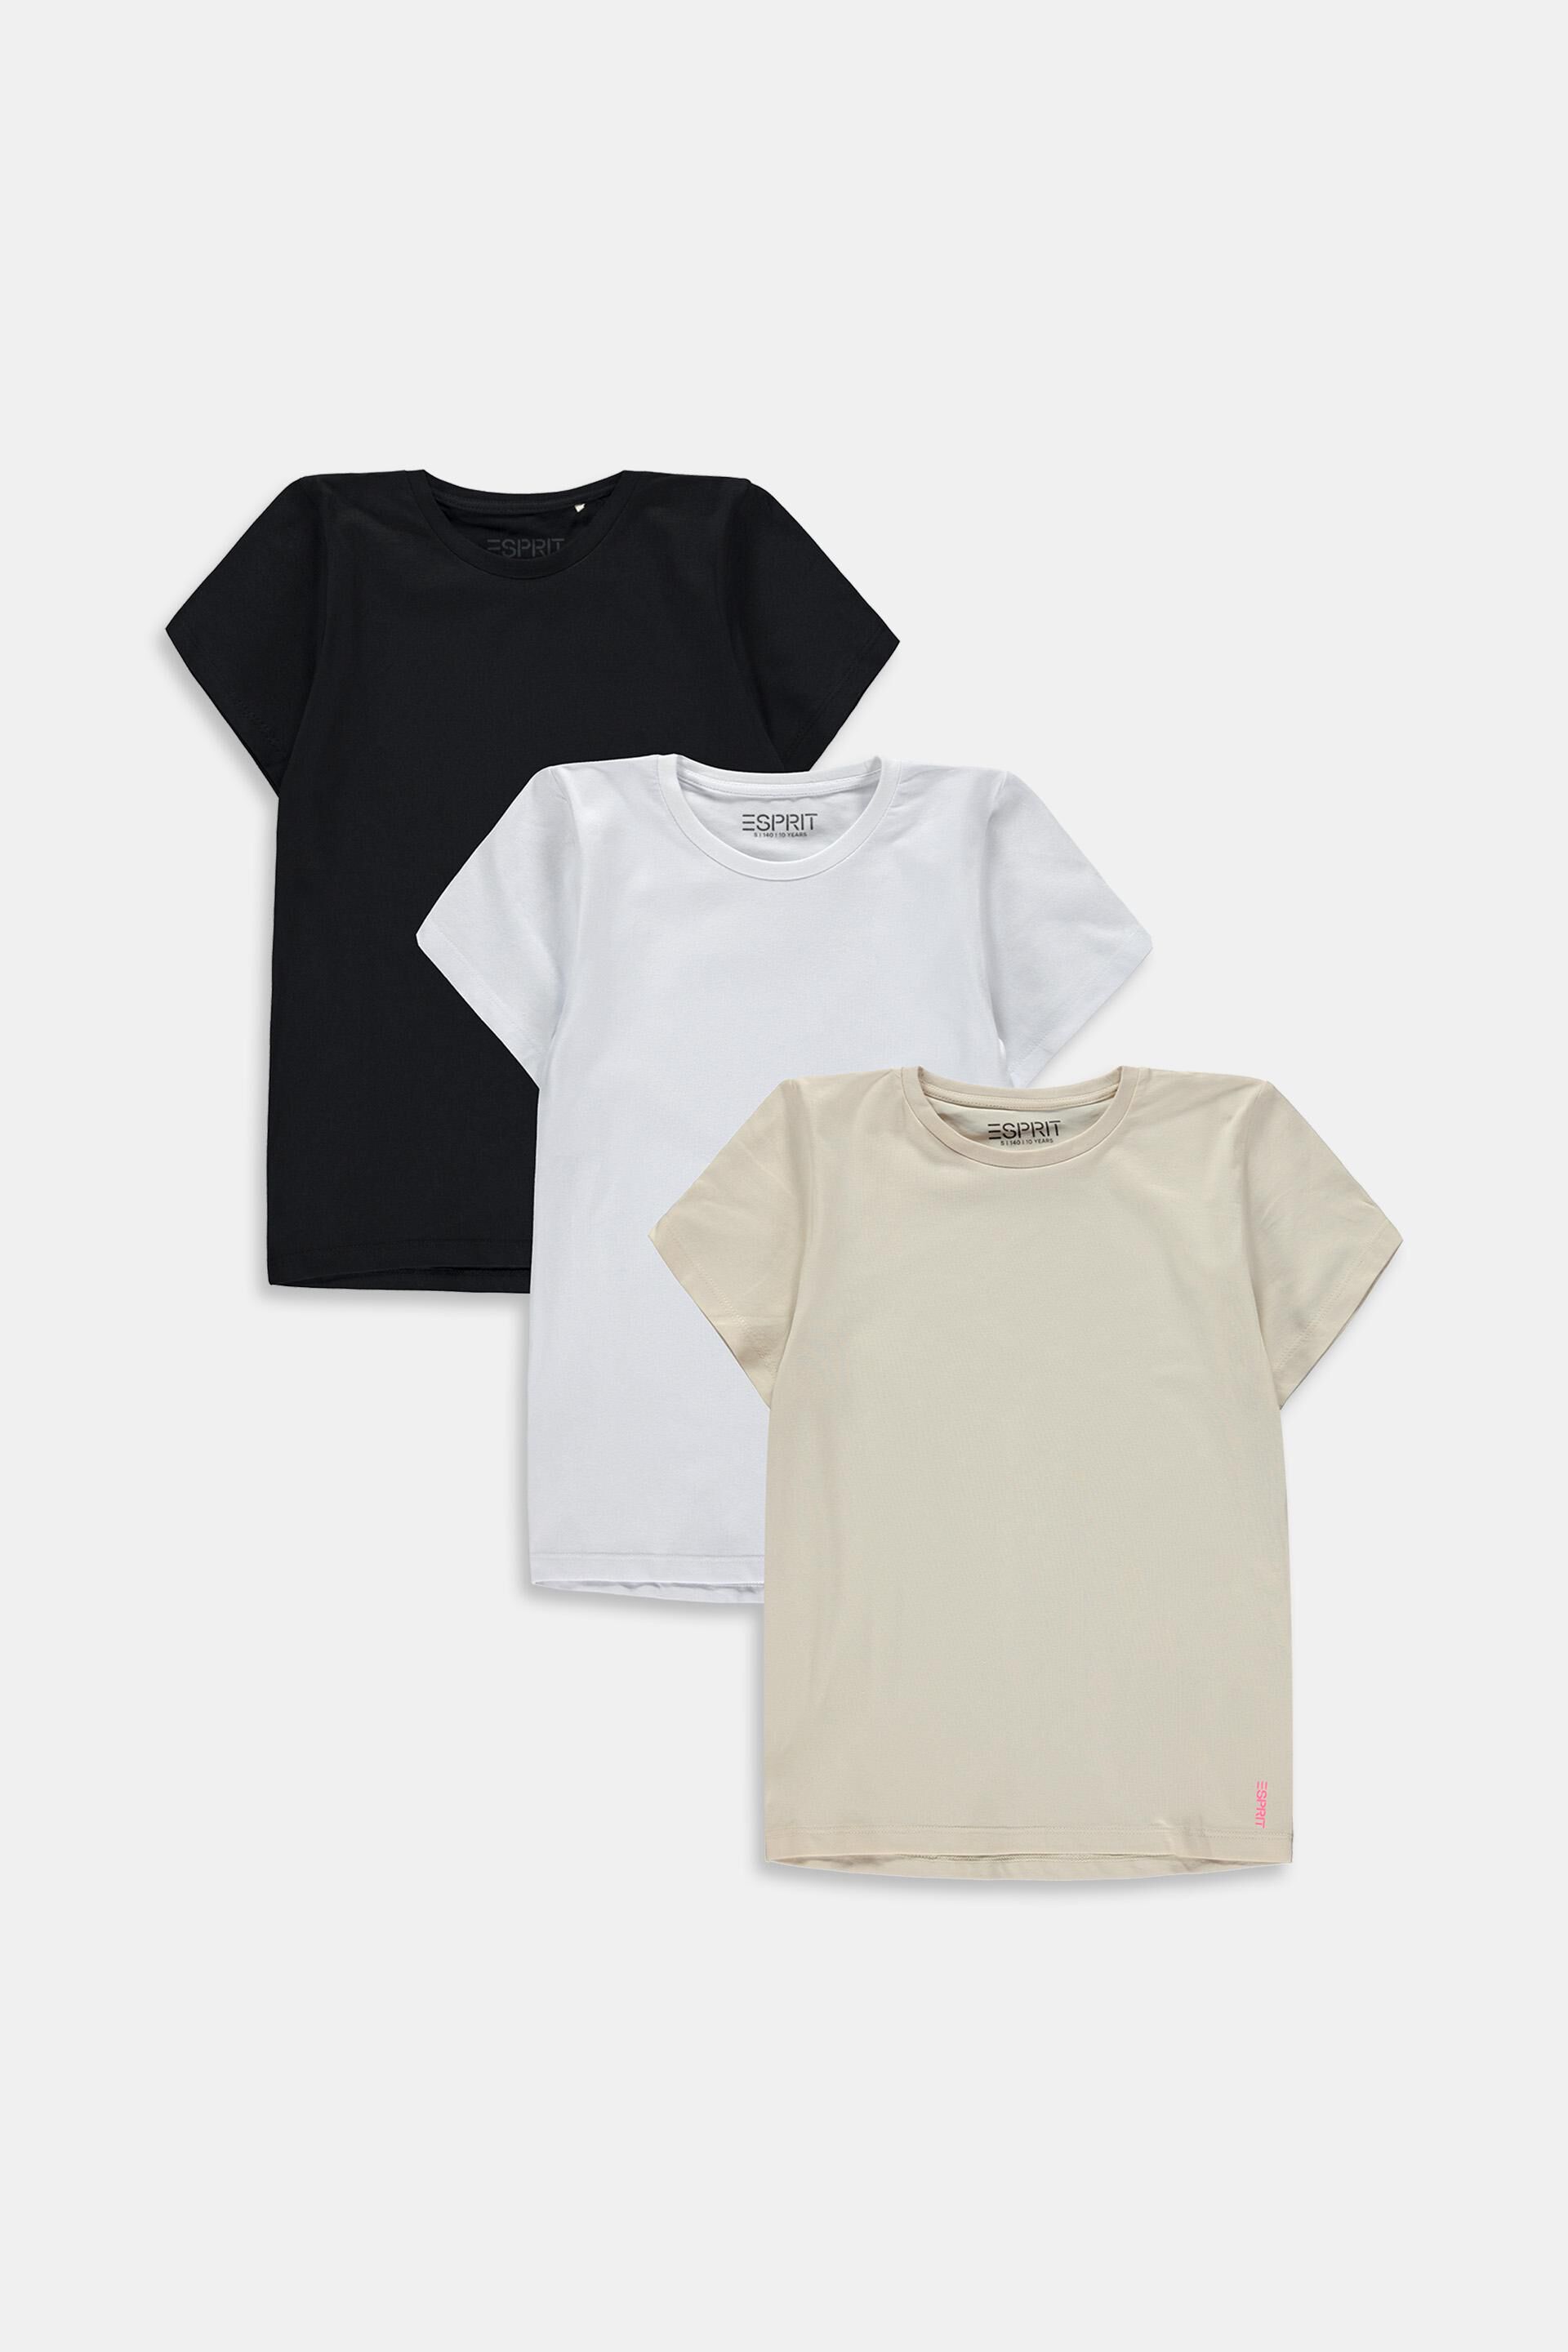 Esprit Outlet 3er-Pack T-Shirts